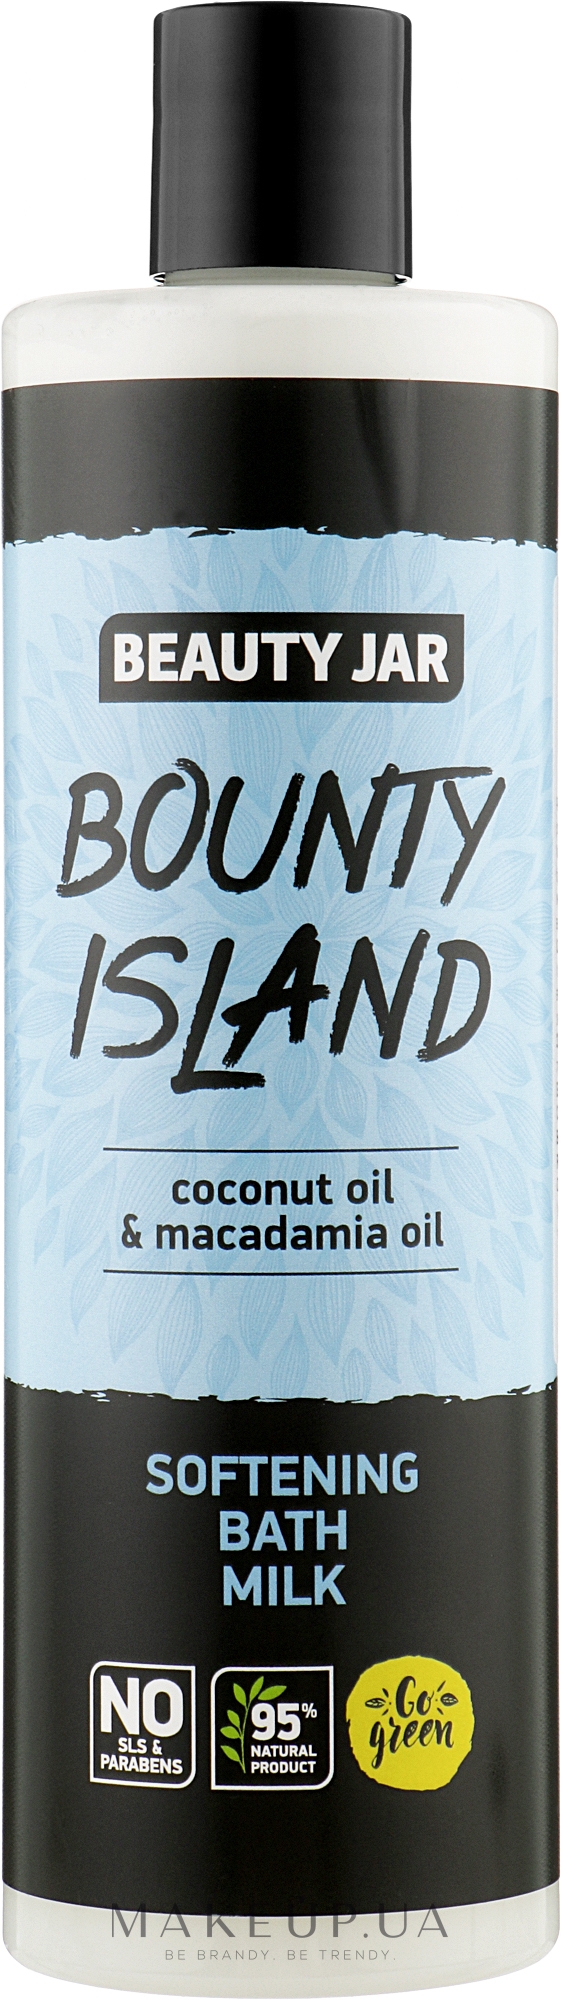 Пом'якшувальна молочна піна для ванни з олією кокоса й макадамі - Beauty Jar Bounty Island Softening Bath Milk — фото 400ml